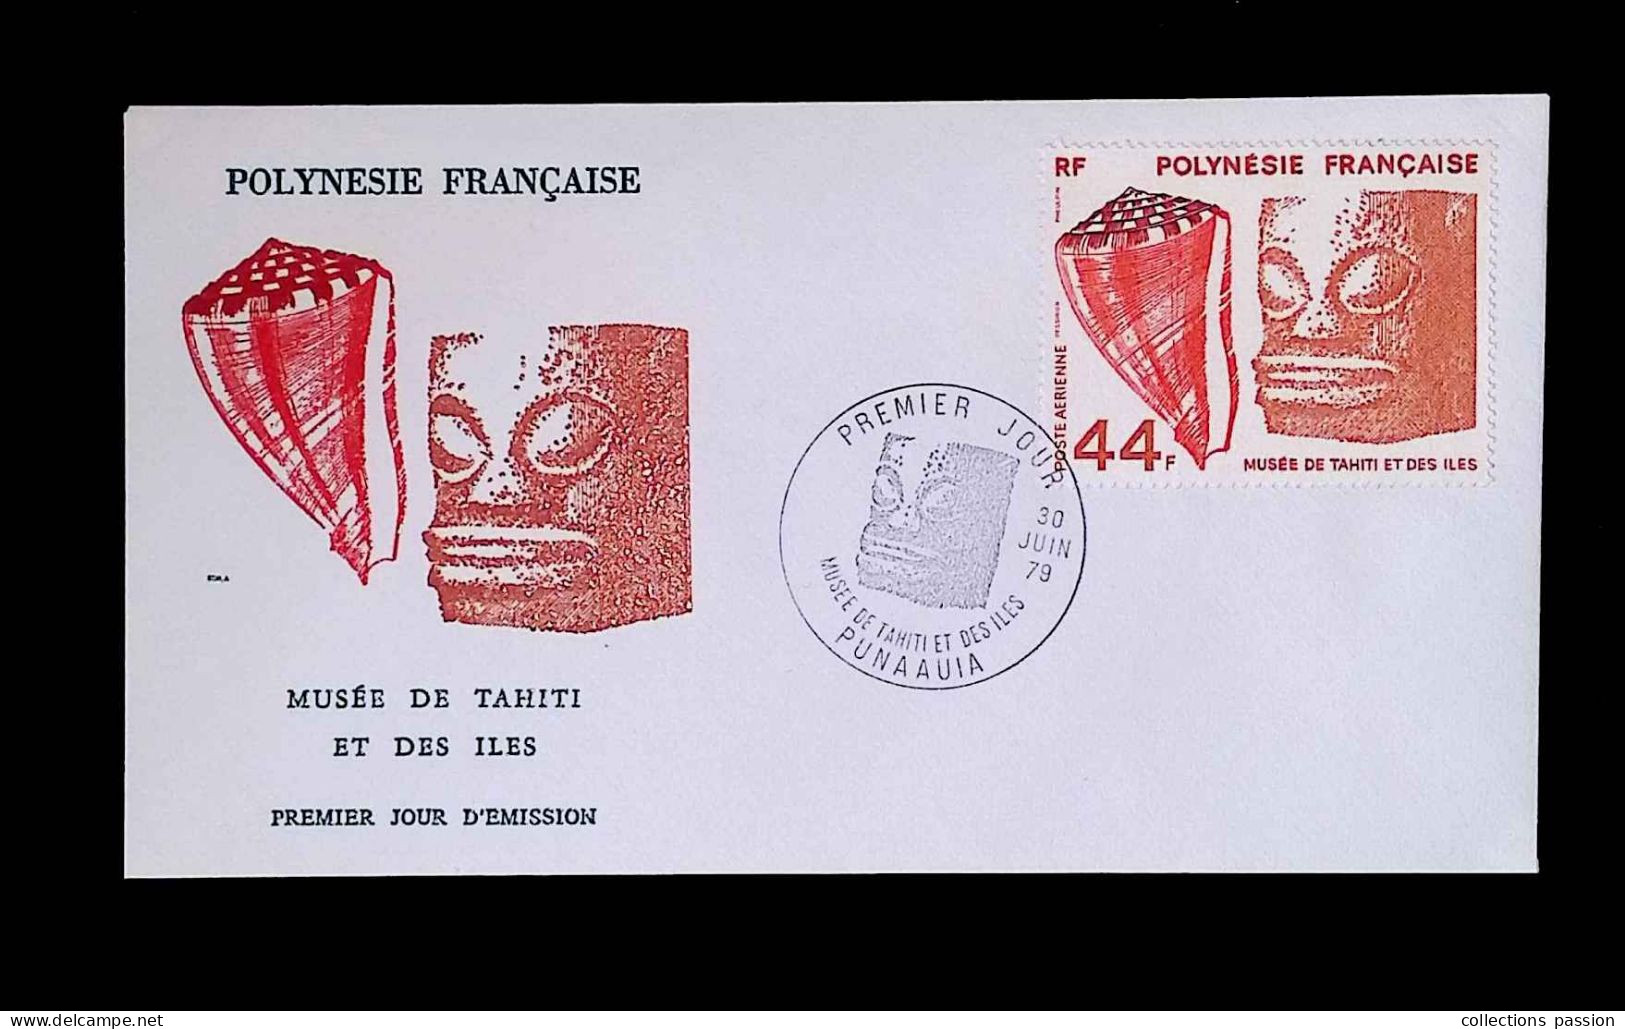 CL, FDC, 1 Er Jour, Polynésie Française, Punaauia, 30 Juin 79, Poste Aérienne, Musée De Tahiti Et Des îles - Covers & Documents